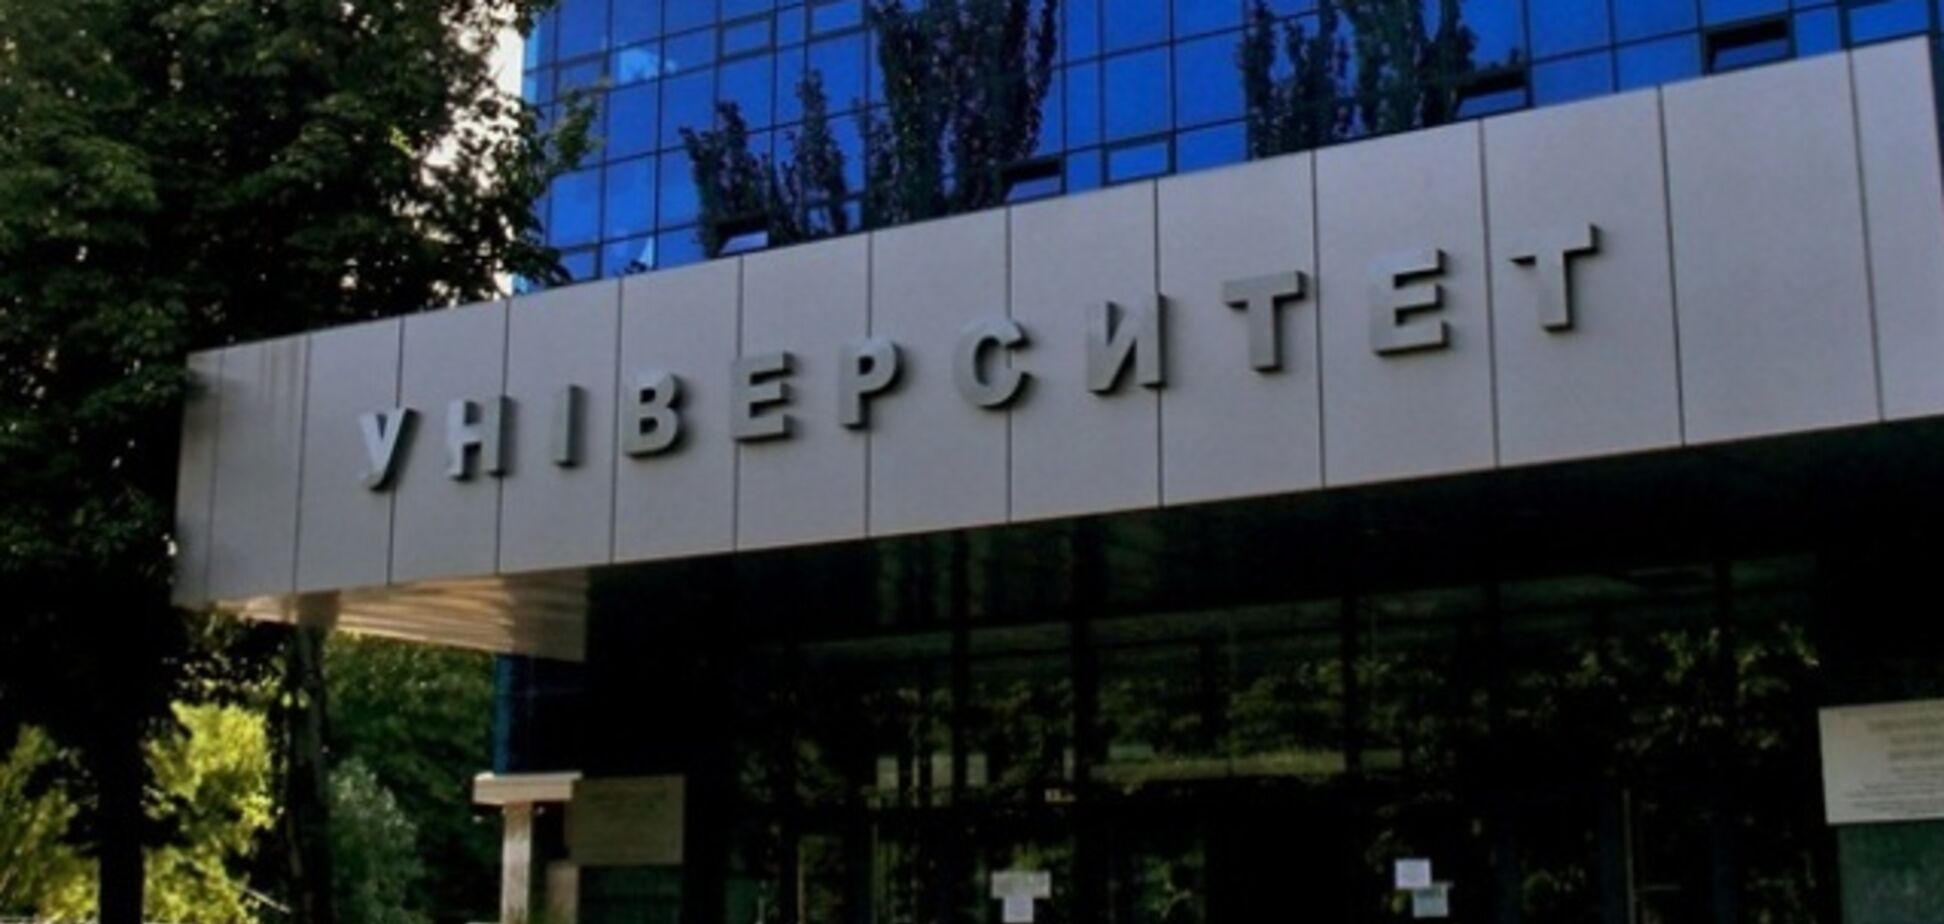 Ректора Дніпровського університету звинуватили в заробітку на студентах